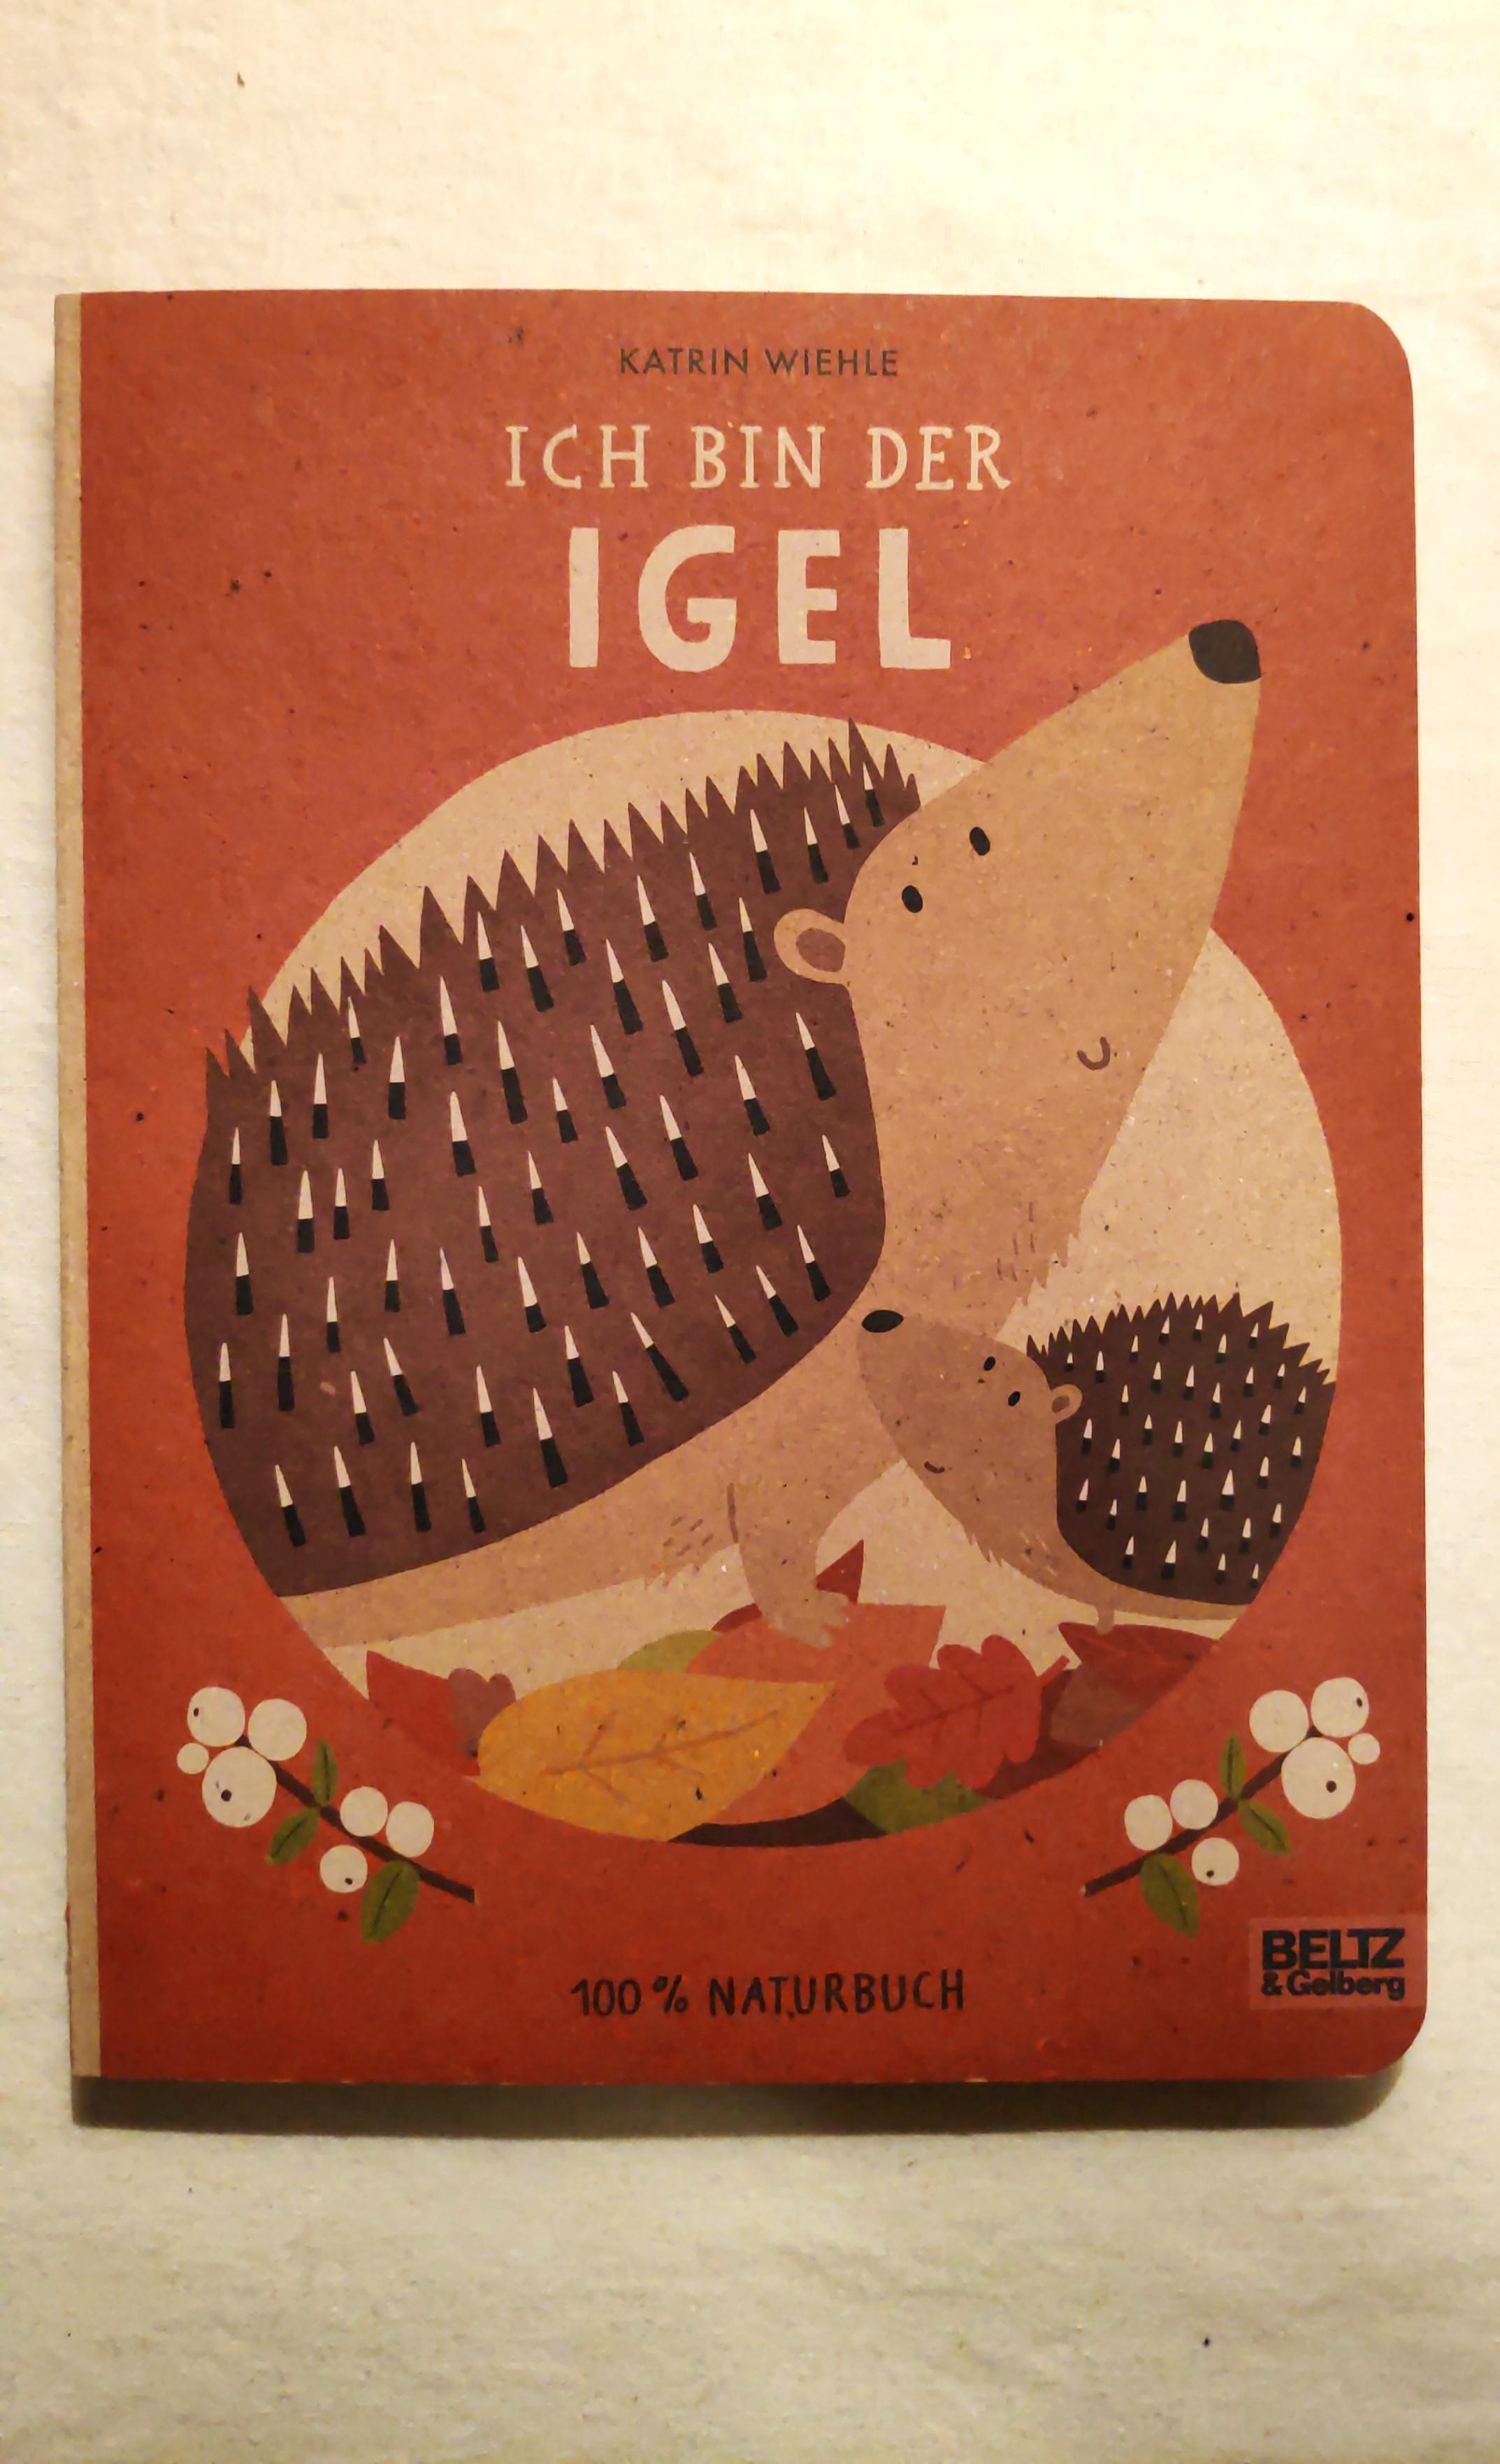 .Buch • Igel • Bild.
#Kinderbuch #Bilderbuch #Tierbuch #Igel #ZeitmitKindern #Kindergarten